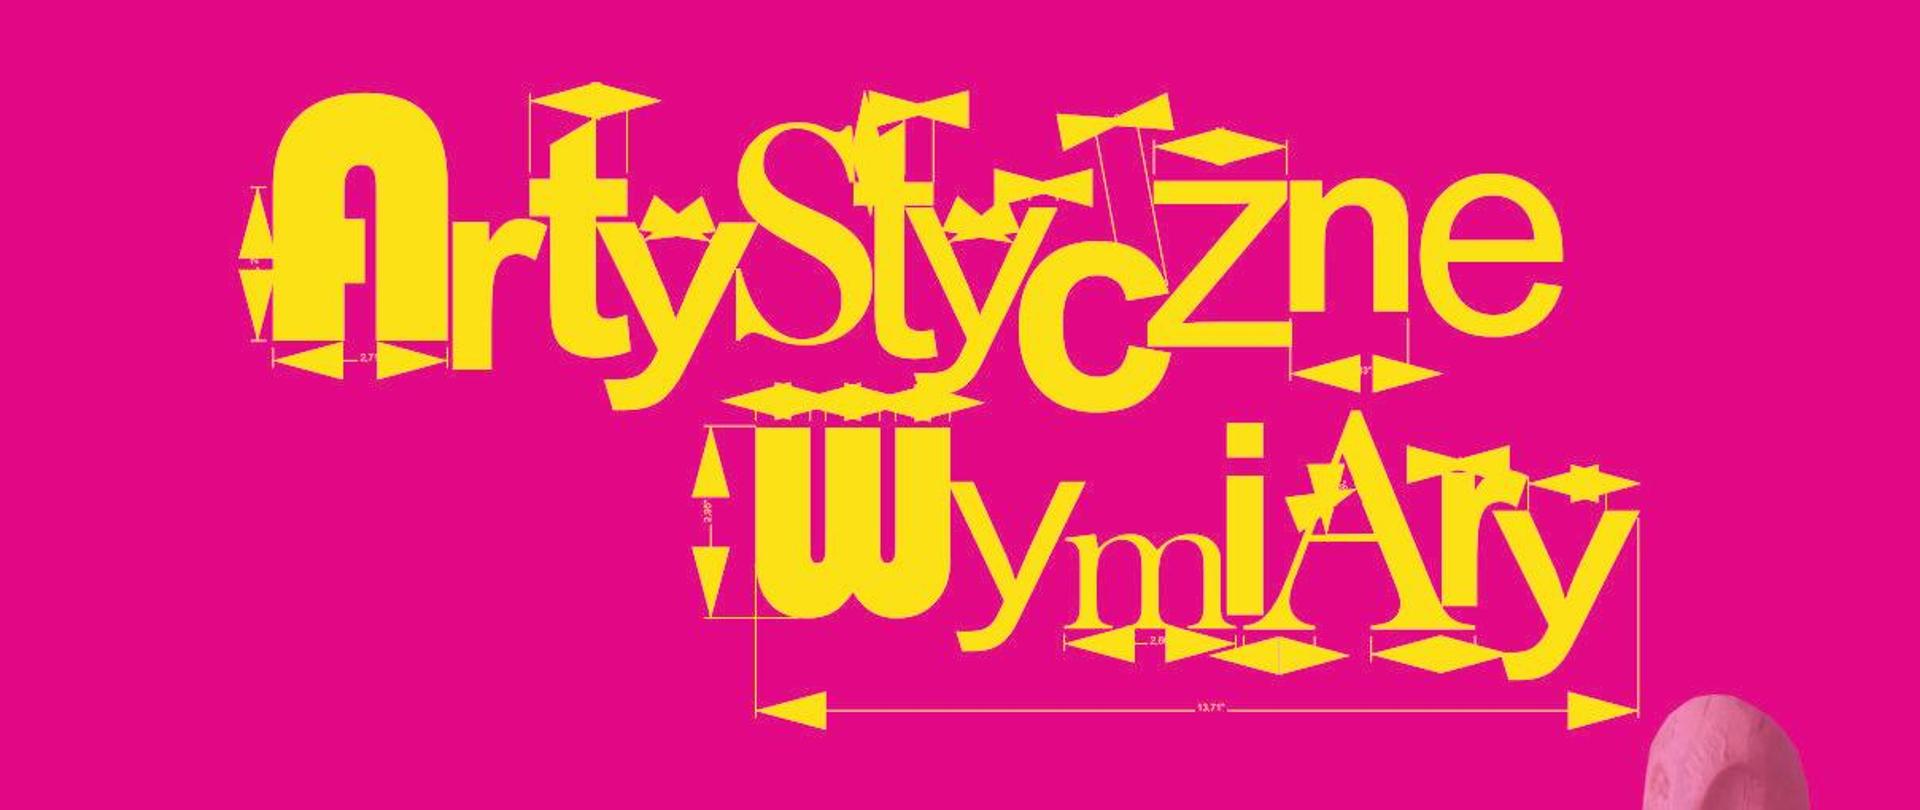 zdjęcie przedstawia plakat z różowym tłem na którym widnieje napis Artystyczne wymiary – wystawa prac uczniów Państwowego Liceum Sztuk Plastycznych w Kielcach w kolorze żółtym